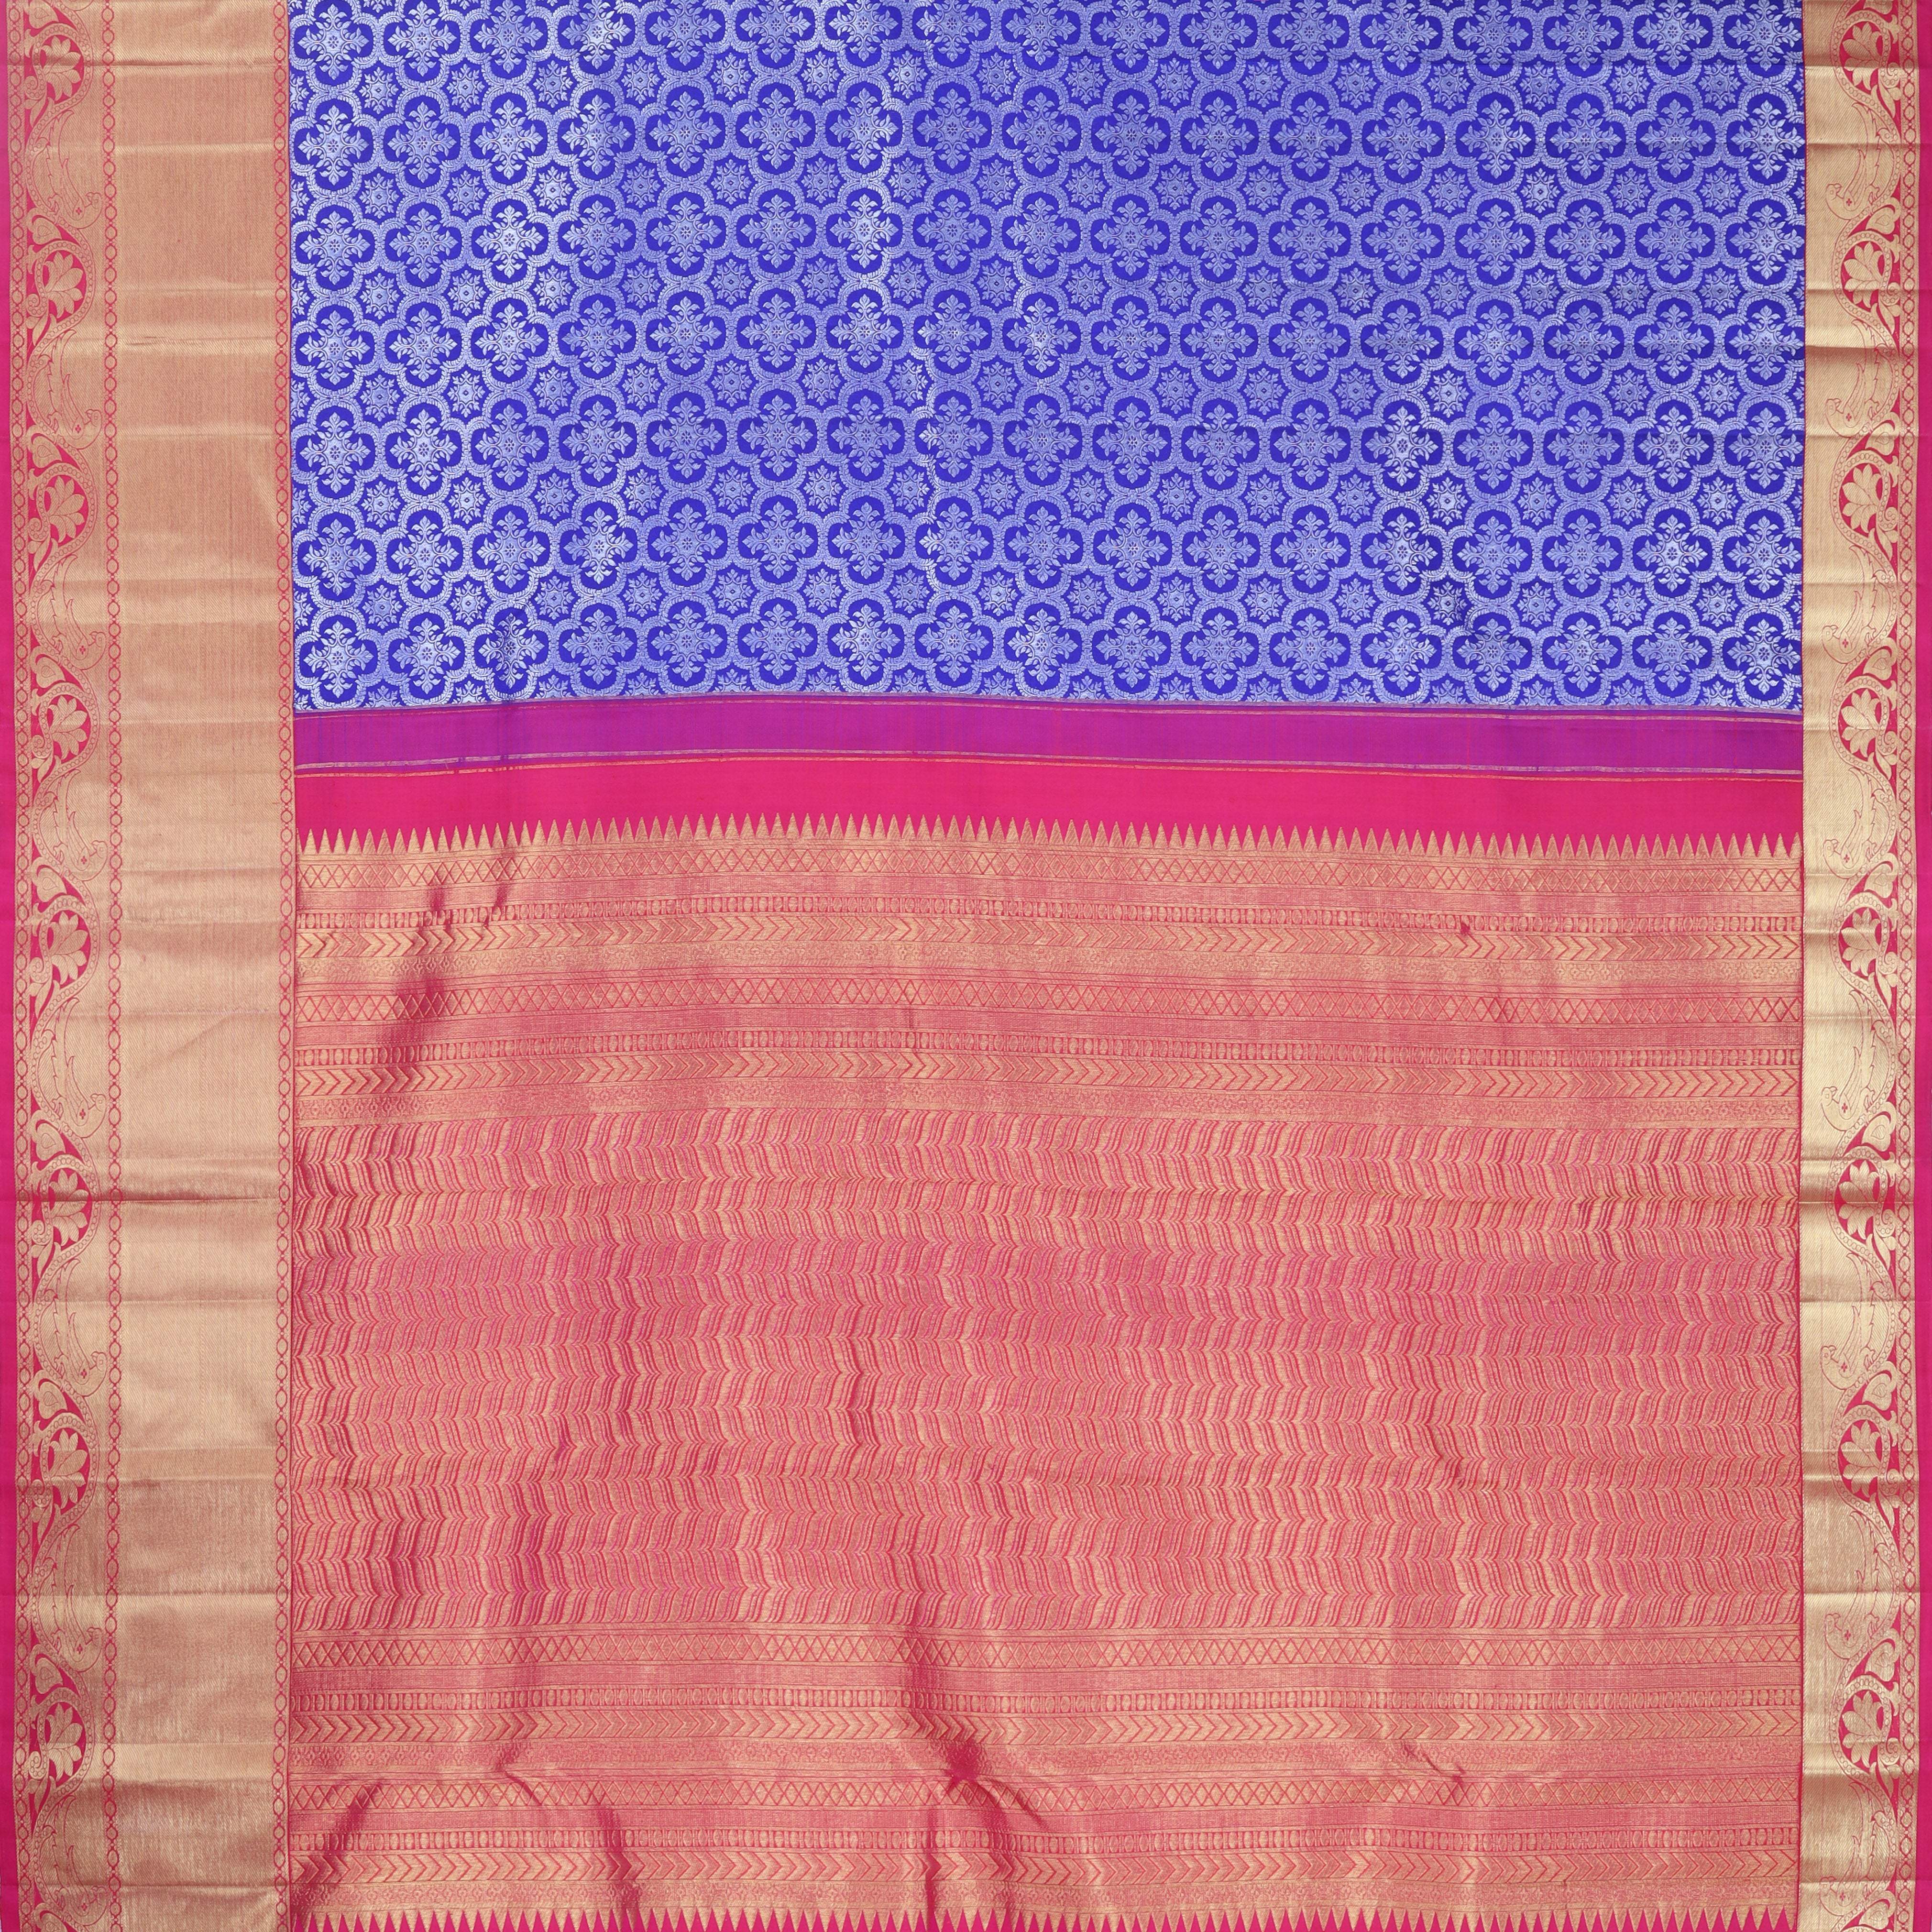 Violet Kanjivaram Silk Saree With Floral Motif Pattern - Singhania's